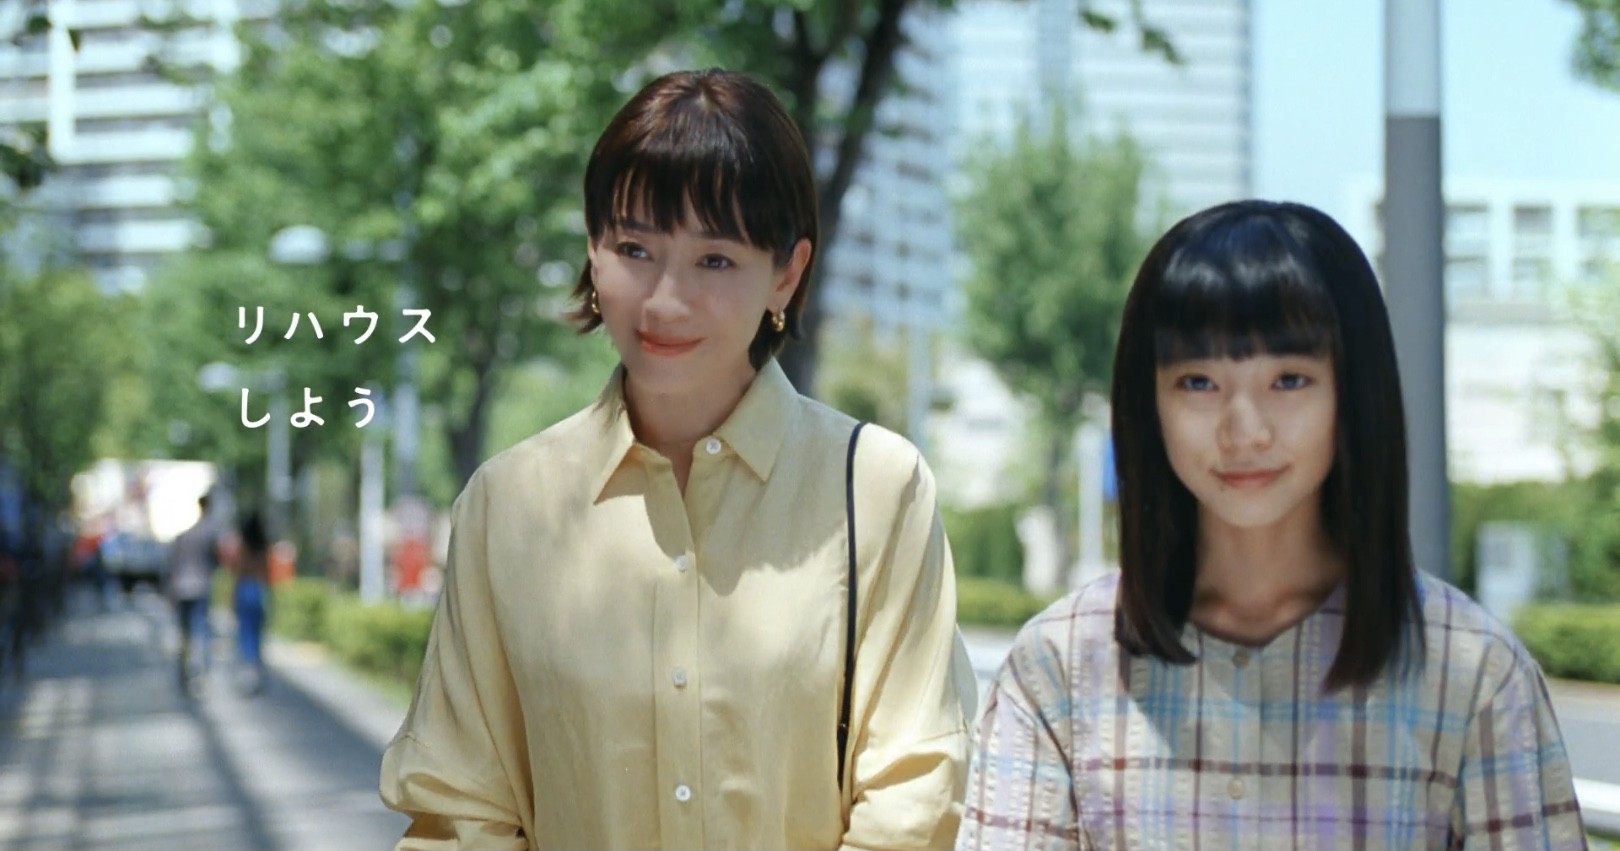 帰ってきた 三井のリハウスcmに宮沢りえが 白鳥麗子 として出演 娘役は21年デビューの近藤華